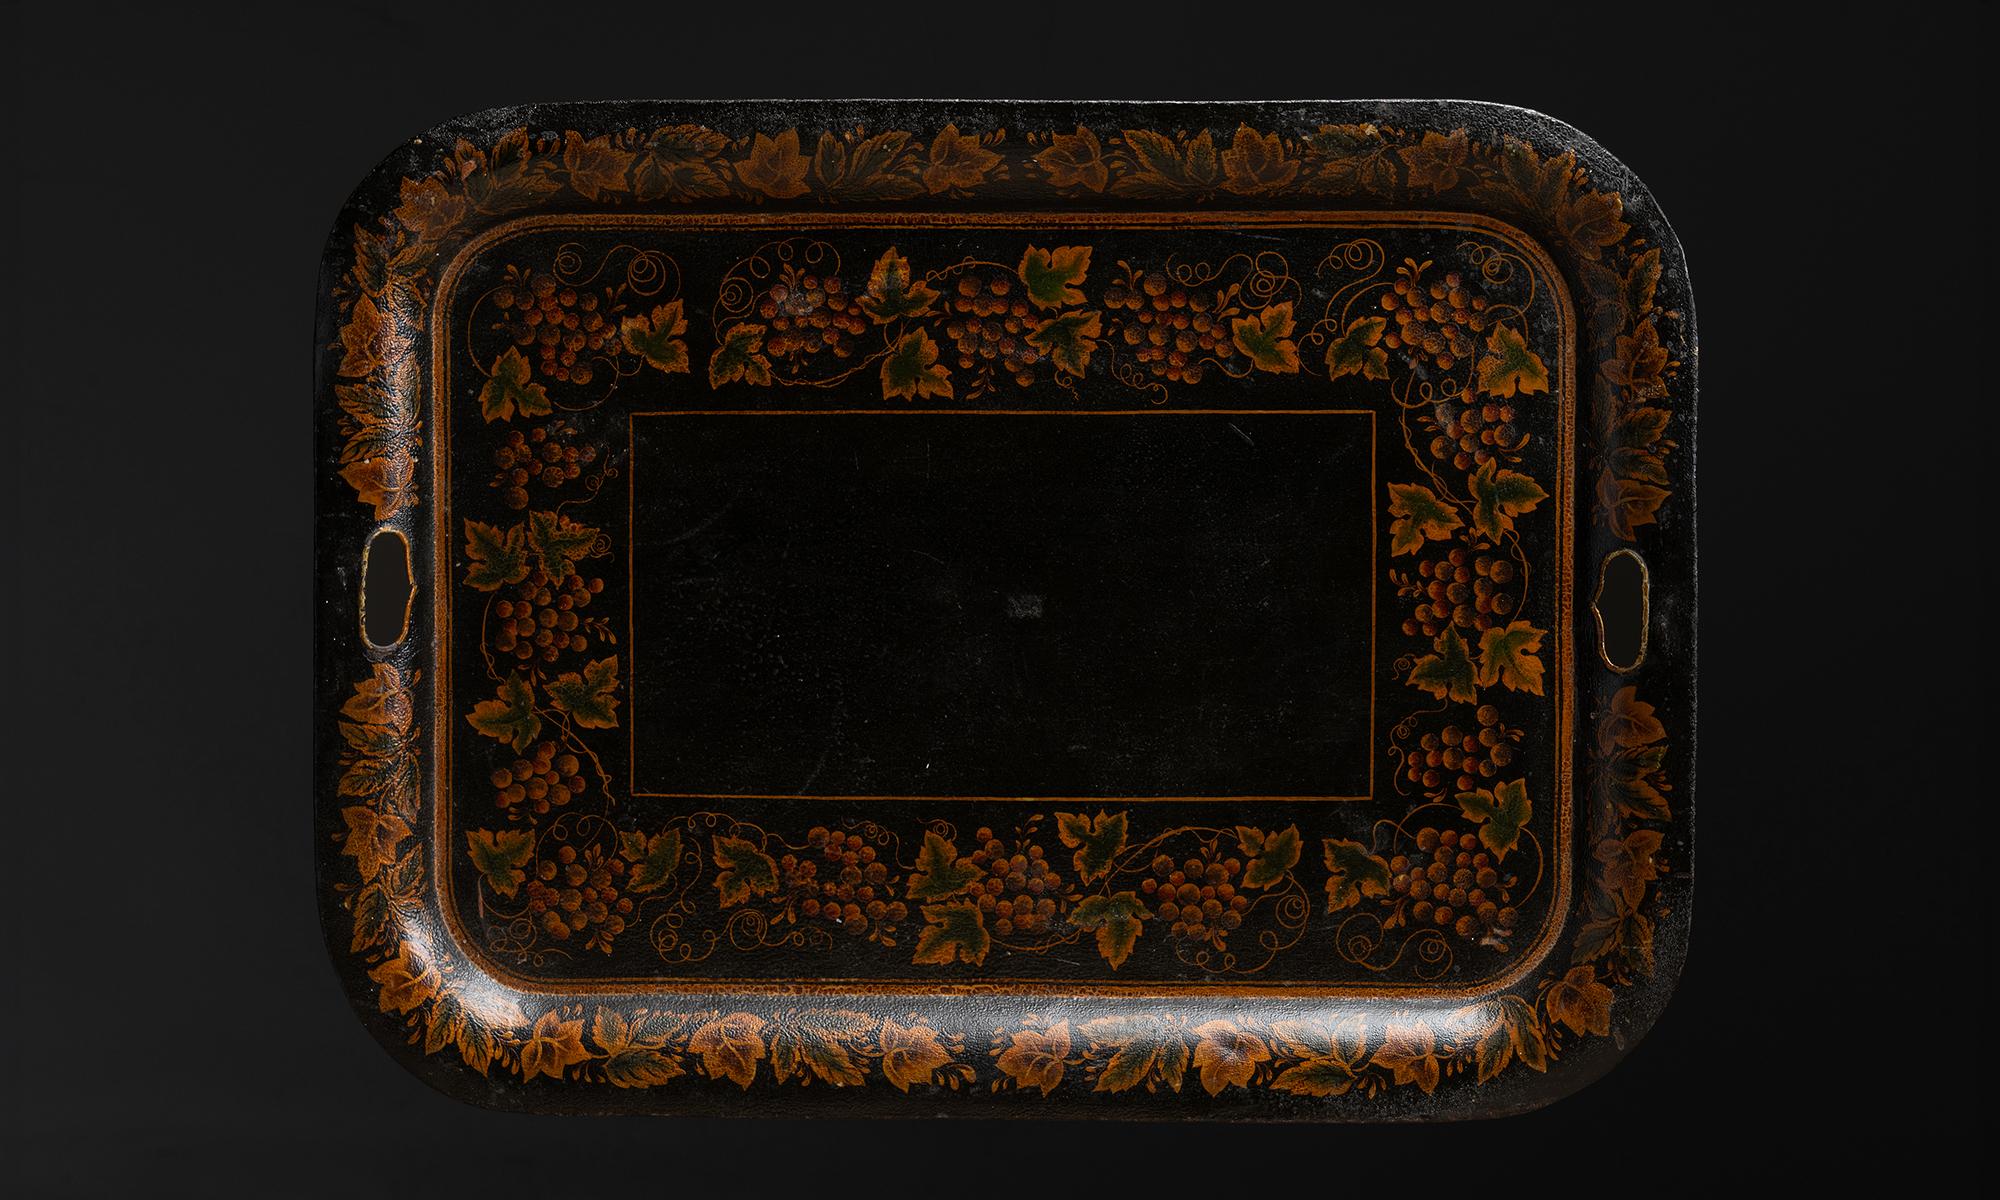 Toleware-Tablett

England um 1890

Handgemaltes Motiv aus Blättern und Trauben, mit gealterter Oberfläche.

28,25 